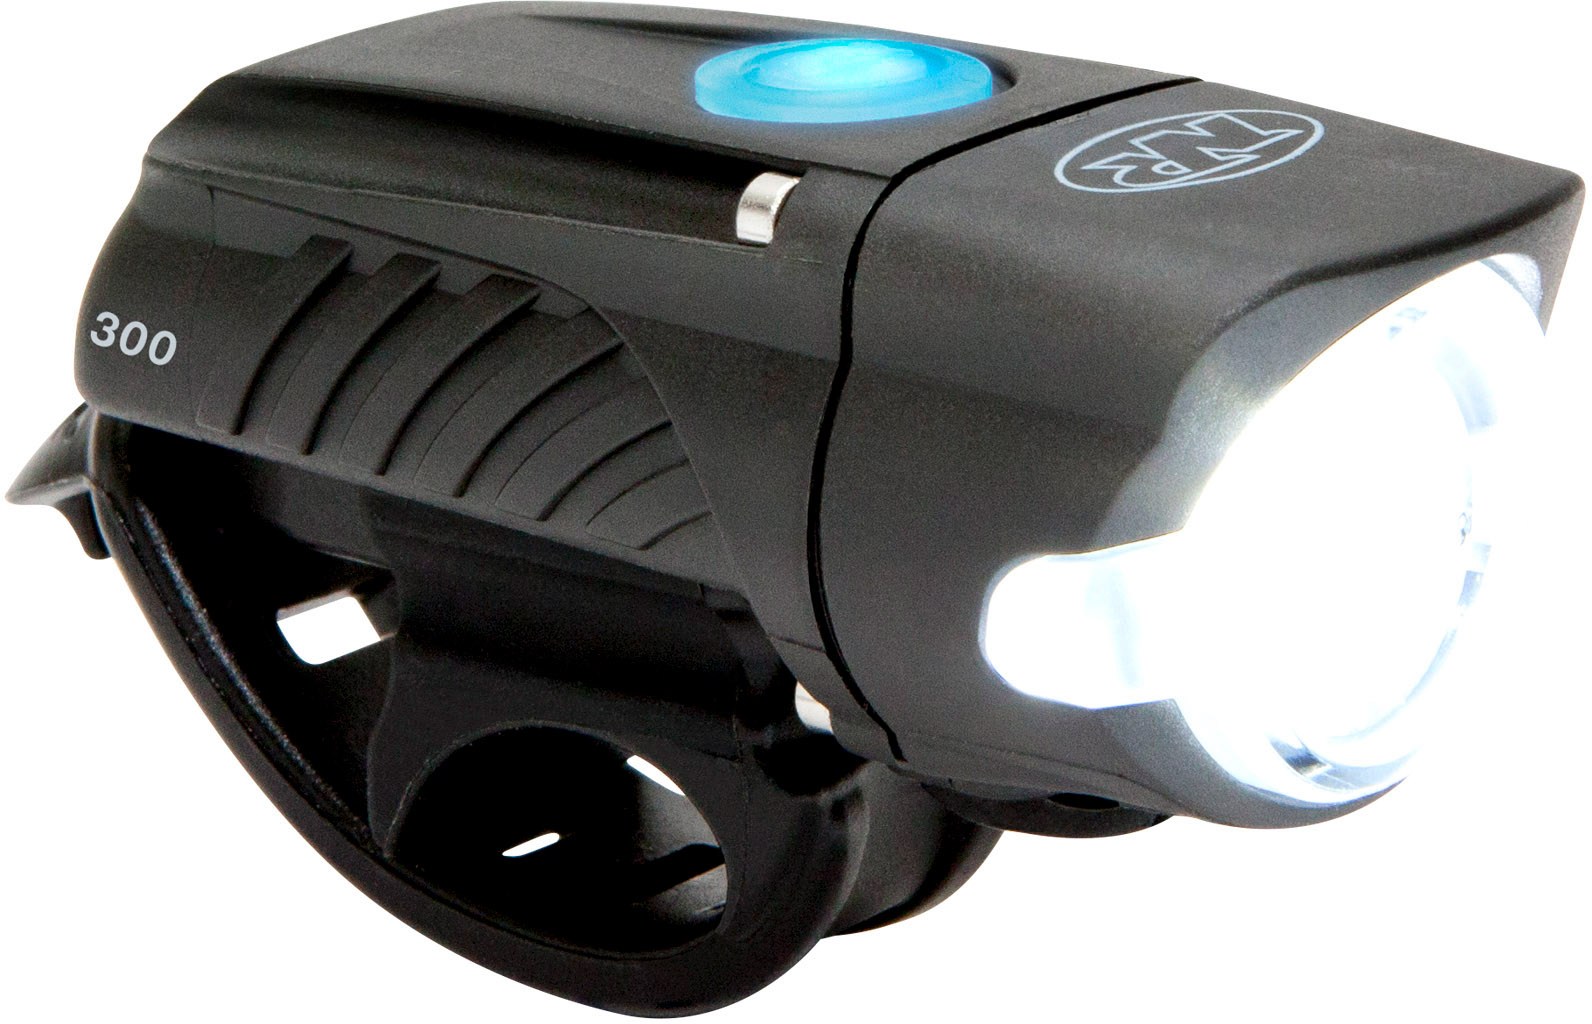 Передний велосипедный фонарь Swift 300 NiteRider цена и фото